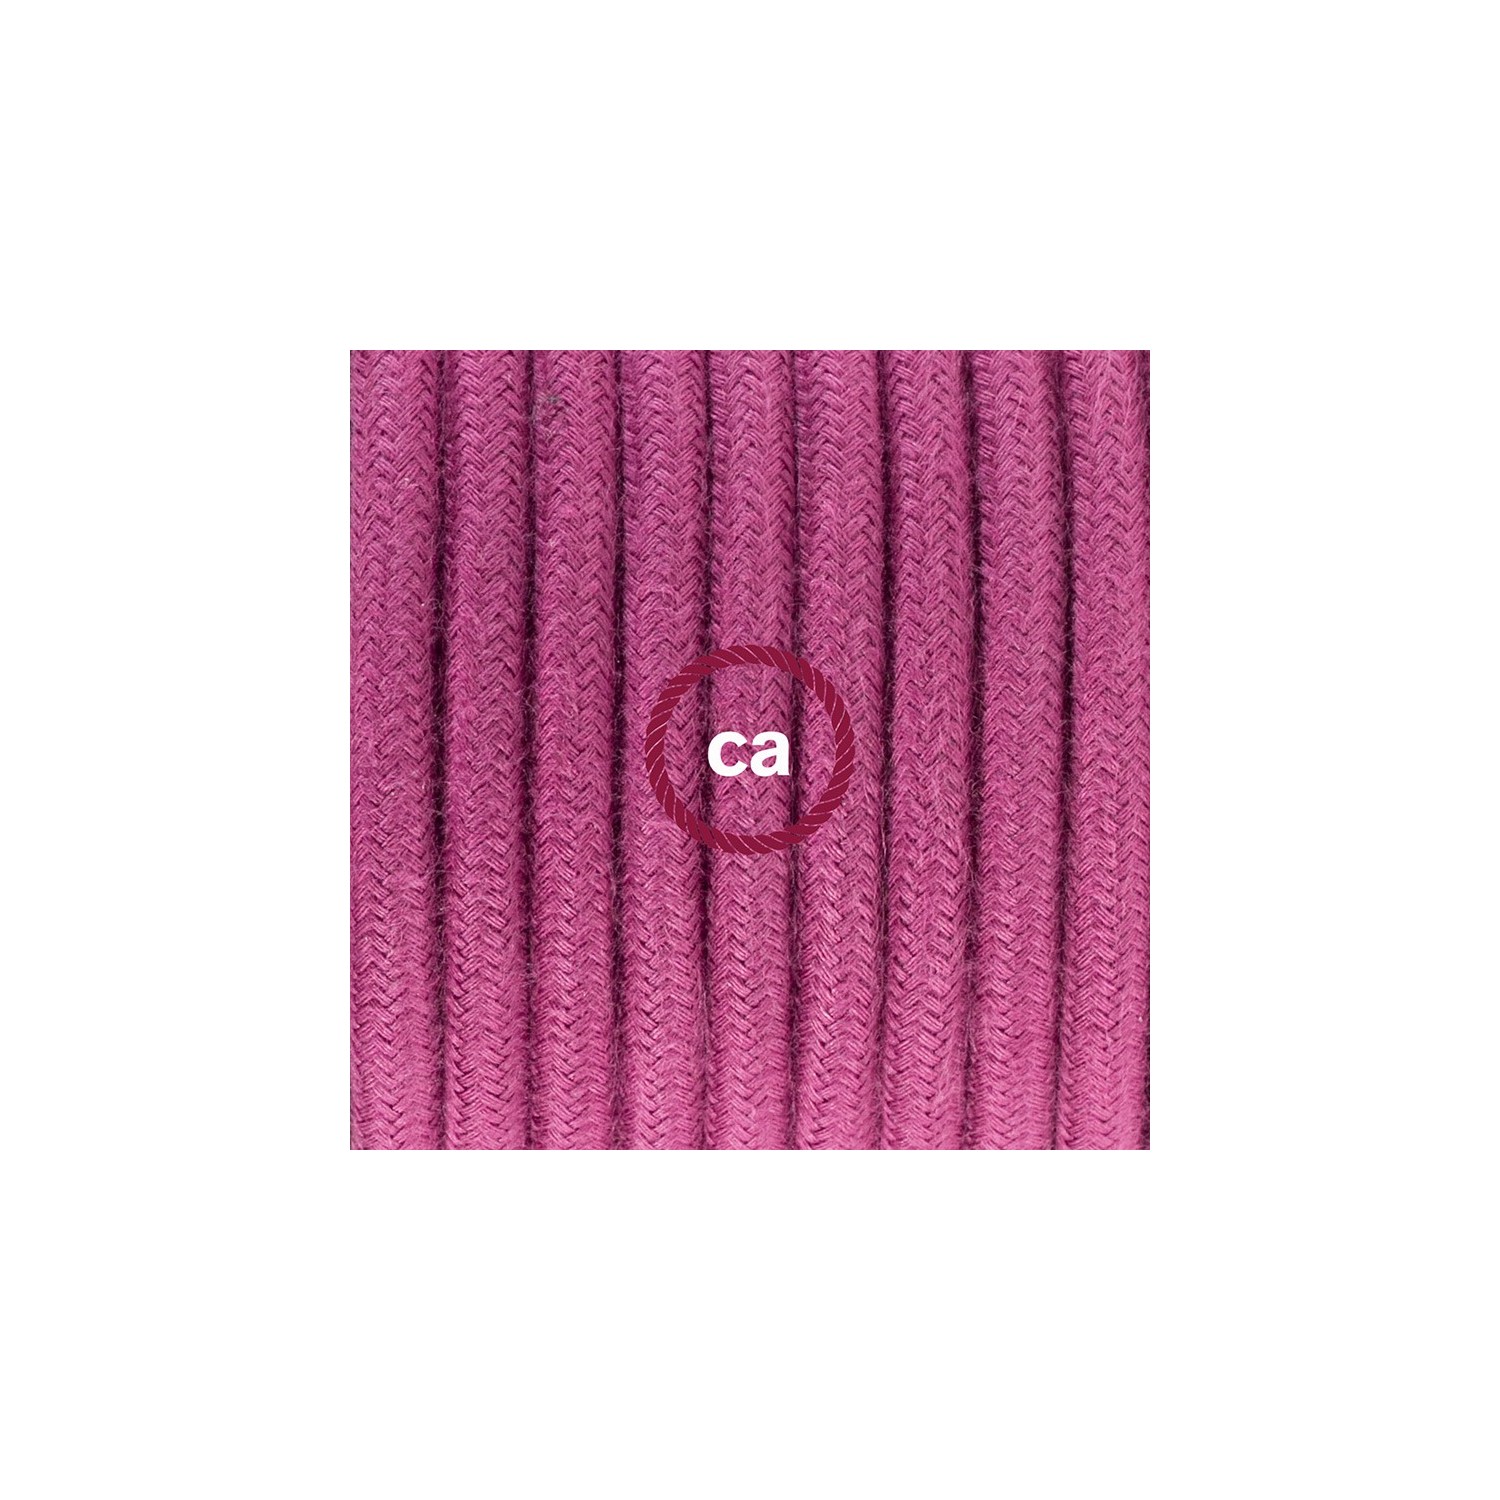 Ronde flexibele textielkabel van katoen met schakelaar en stekker. RC32 - burgundy 1,80 m.